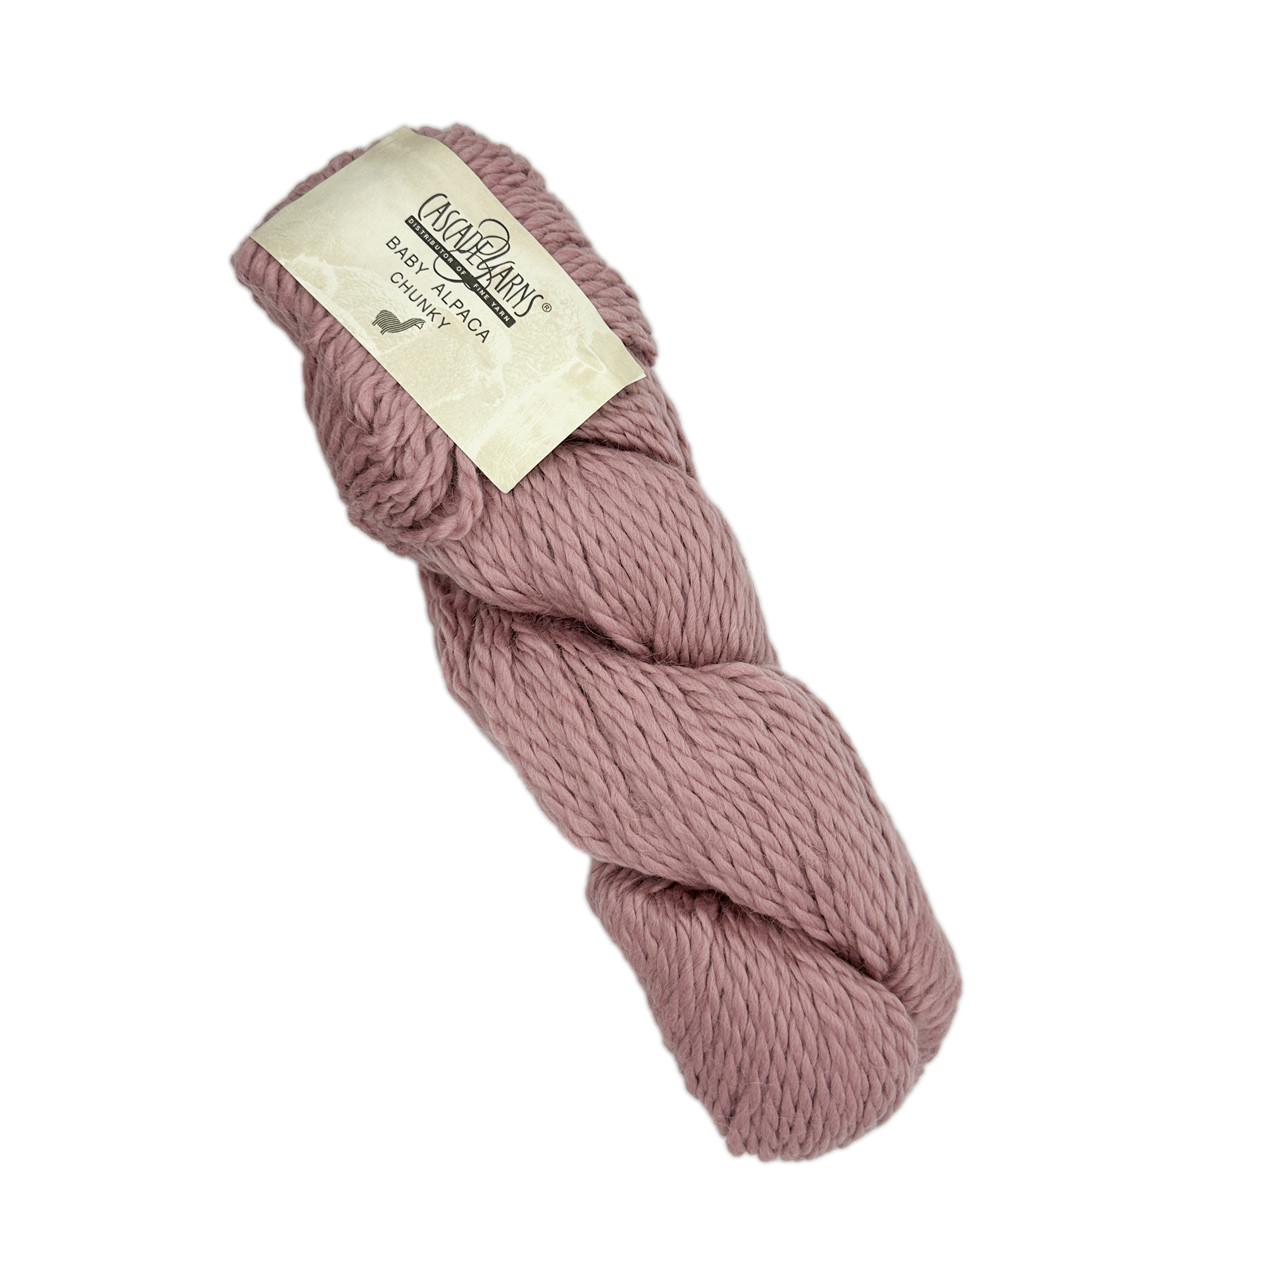 Alpaca Knitting and Crochet Yarn at WEBS